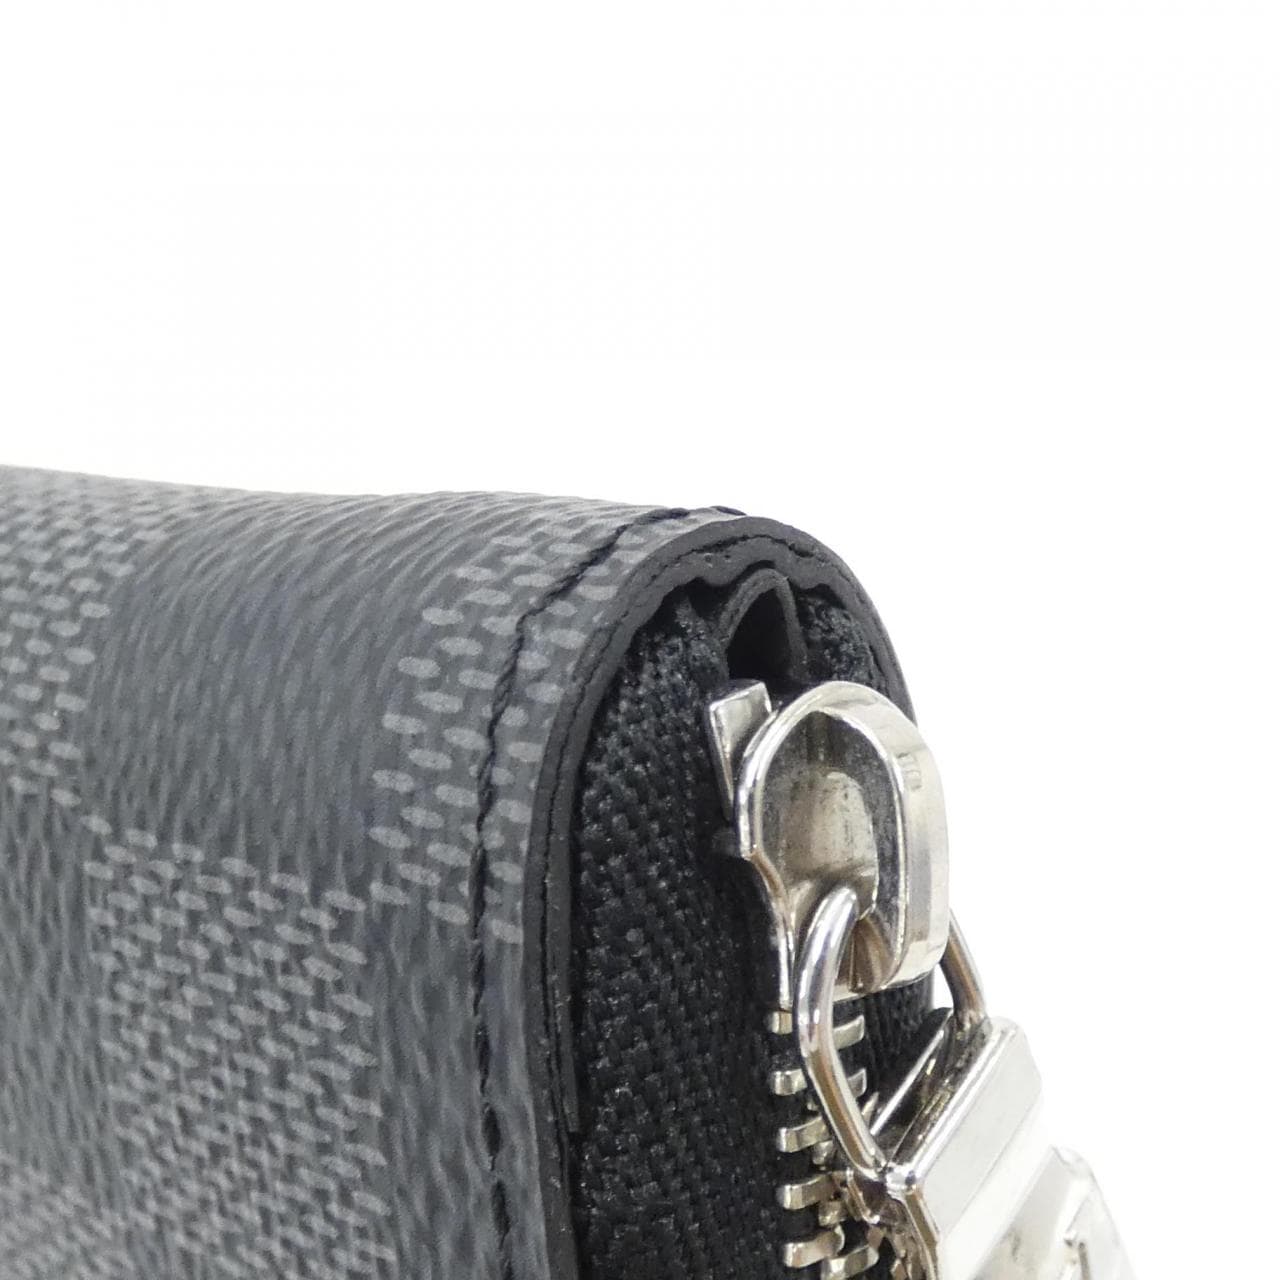 LOUIS VUITTON. Round coin purse in black denim canvas, m… | Drouot.com